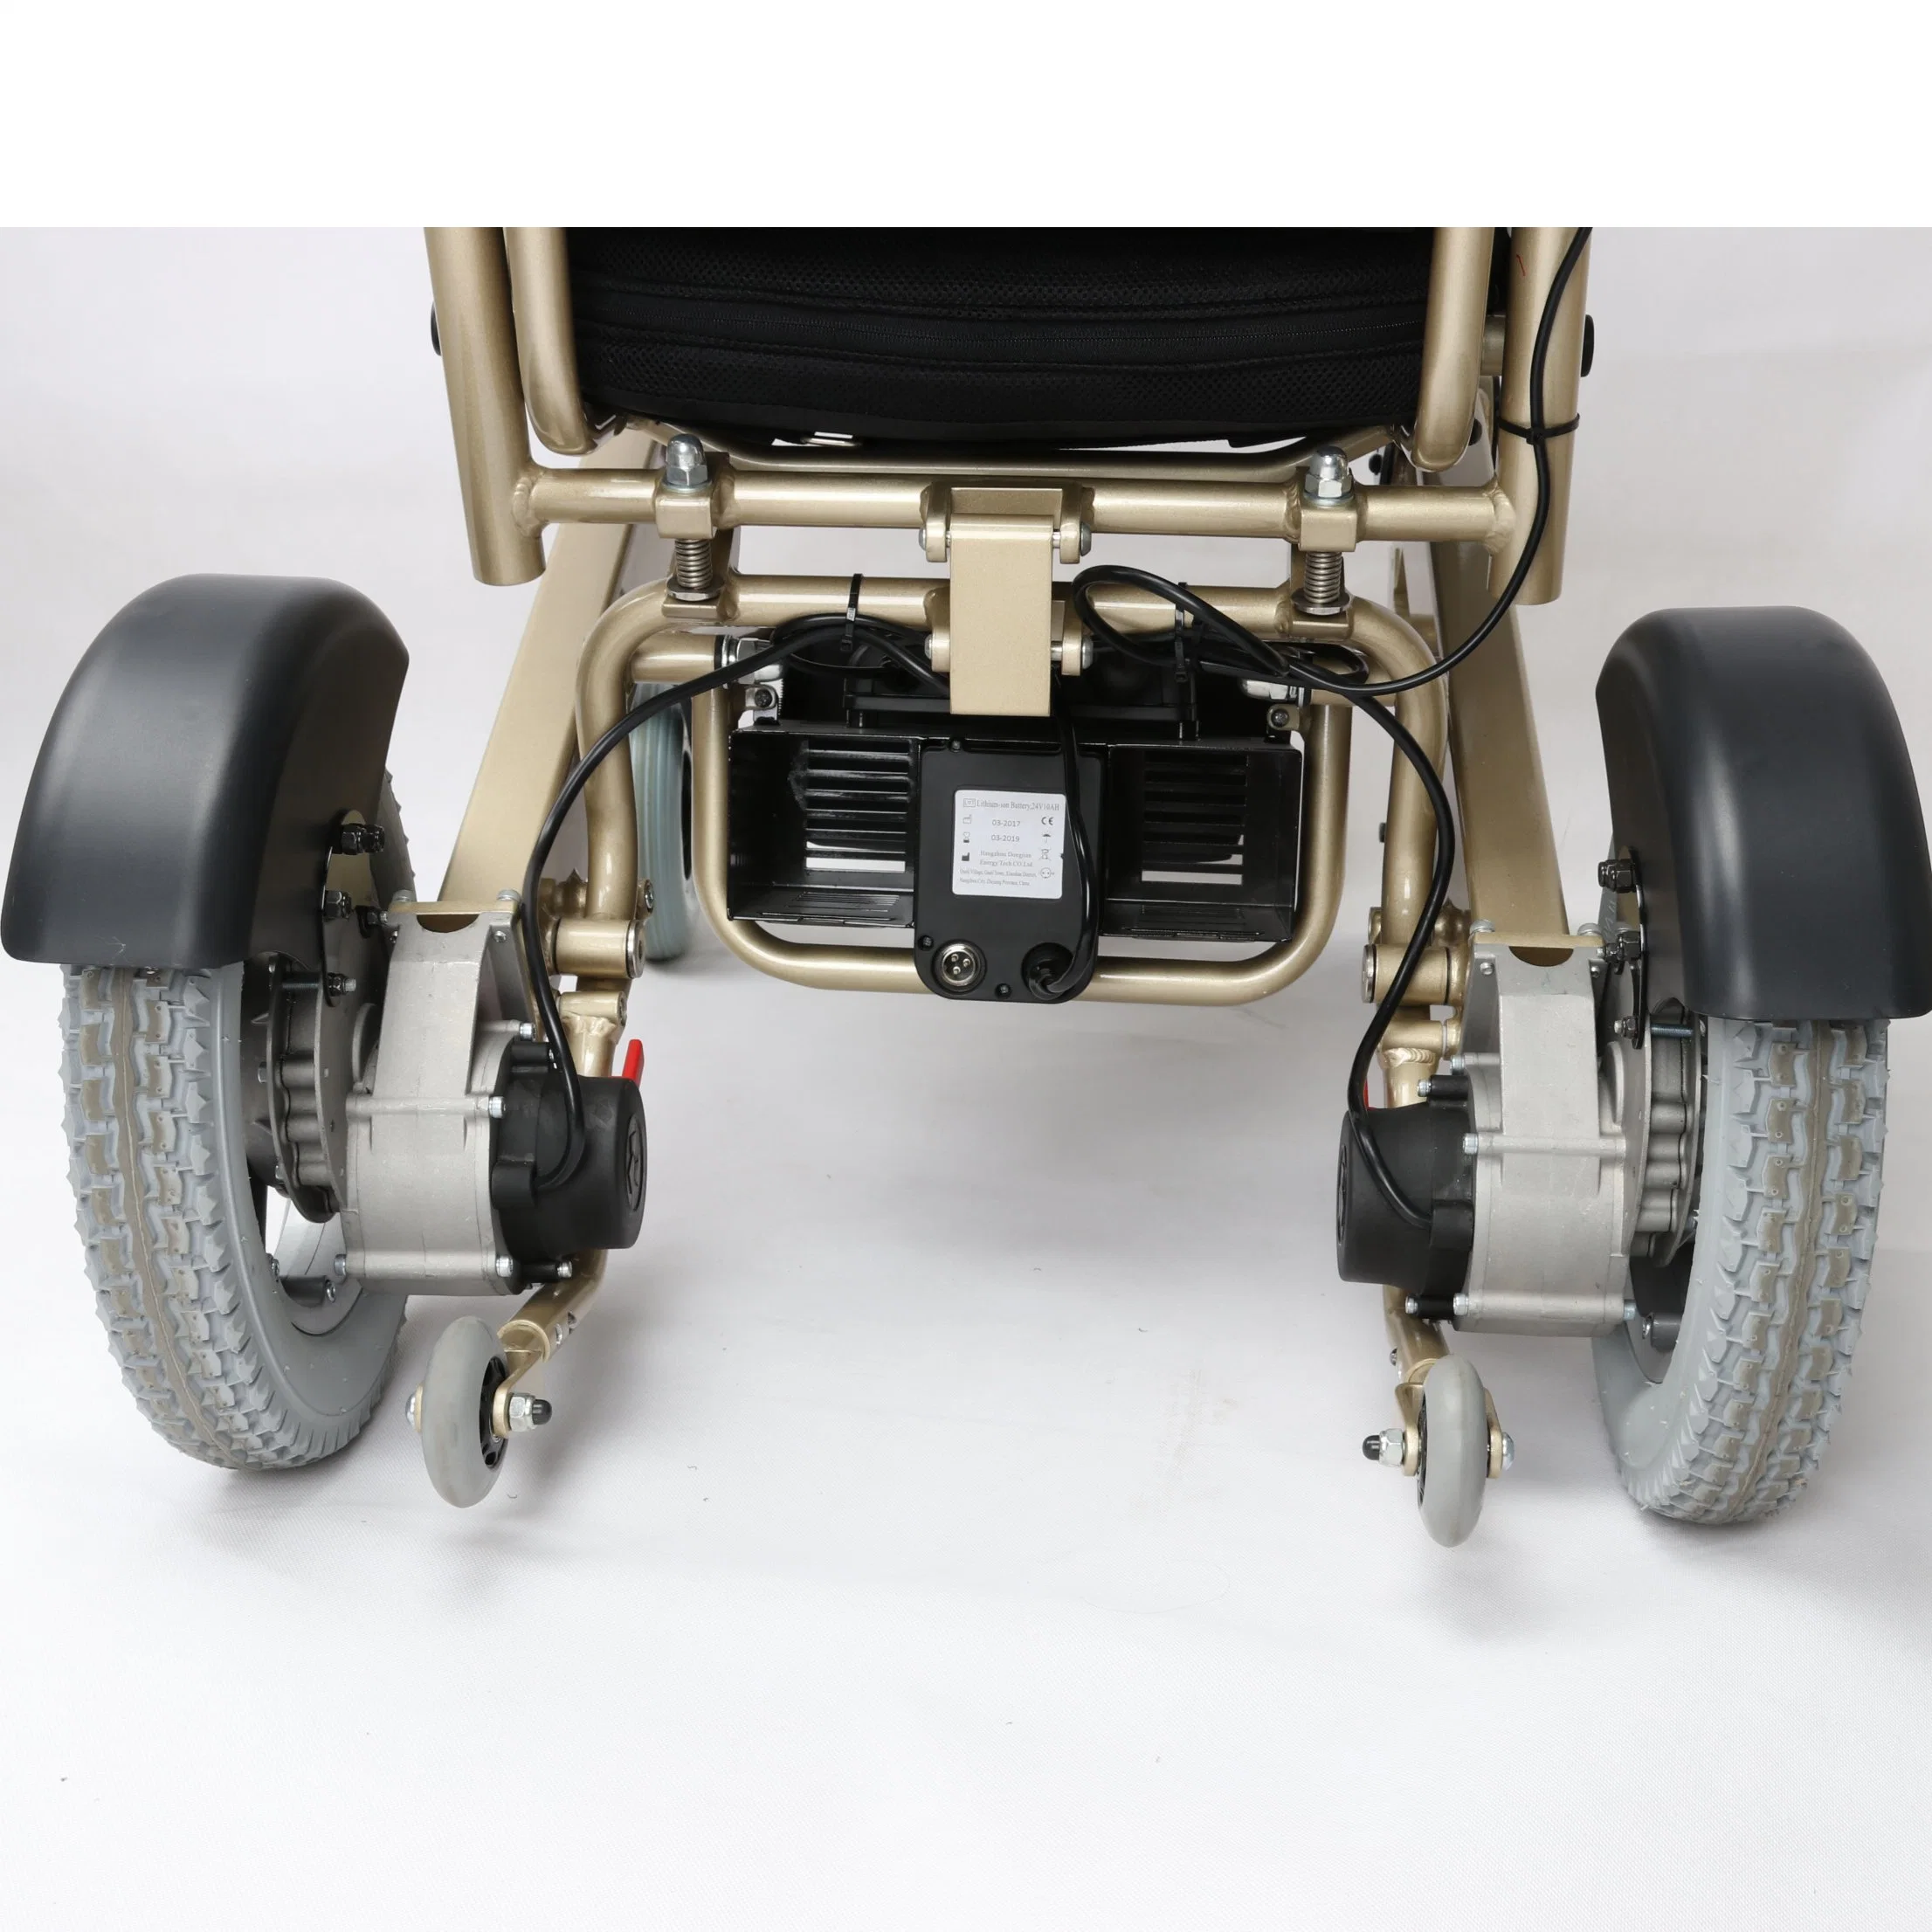 Equipo de rehabilitación para el cuidado de la salud con discapacidad silla de ruedas eléctrica Lista de precios en Turquía